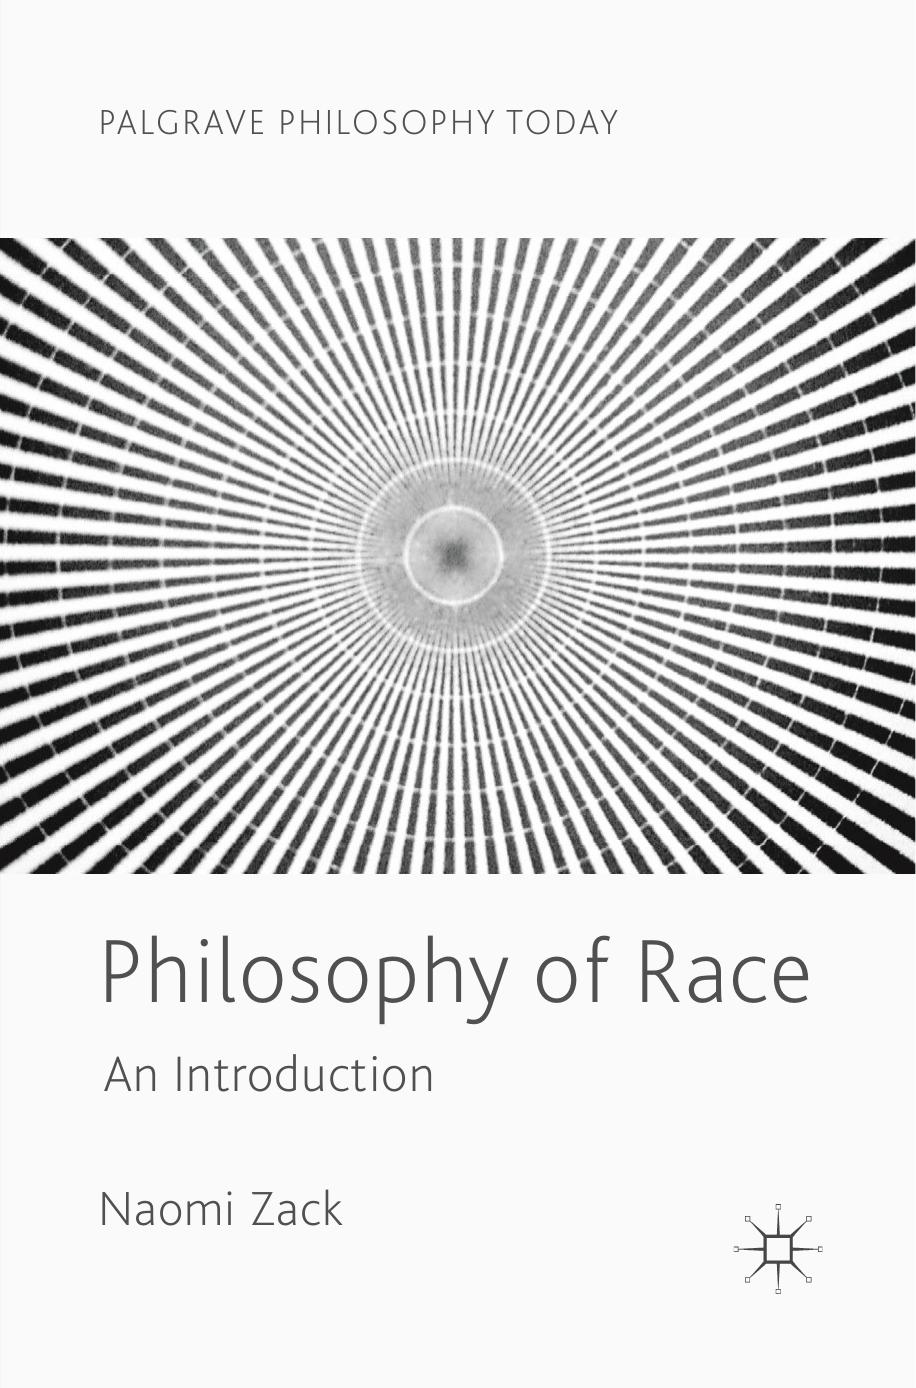 Philosophy of Race by Naomi Zack